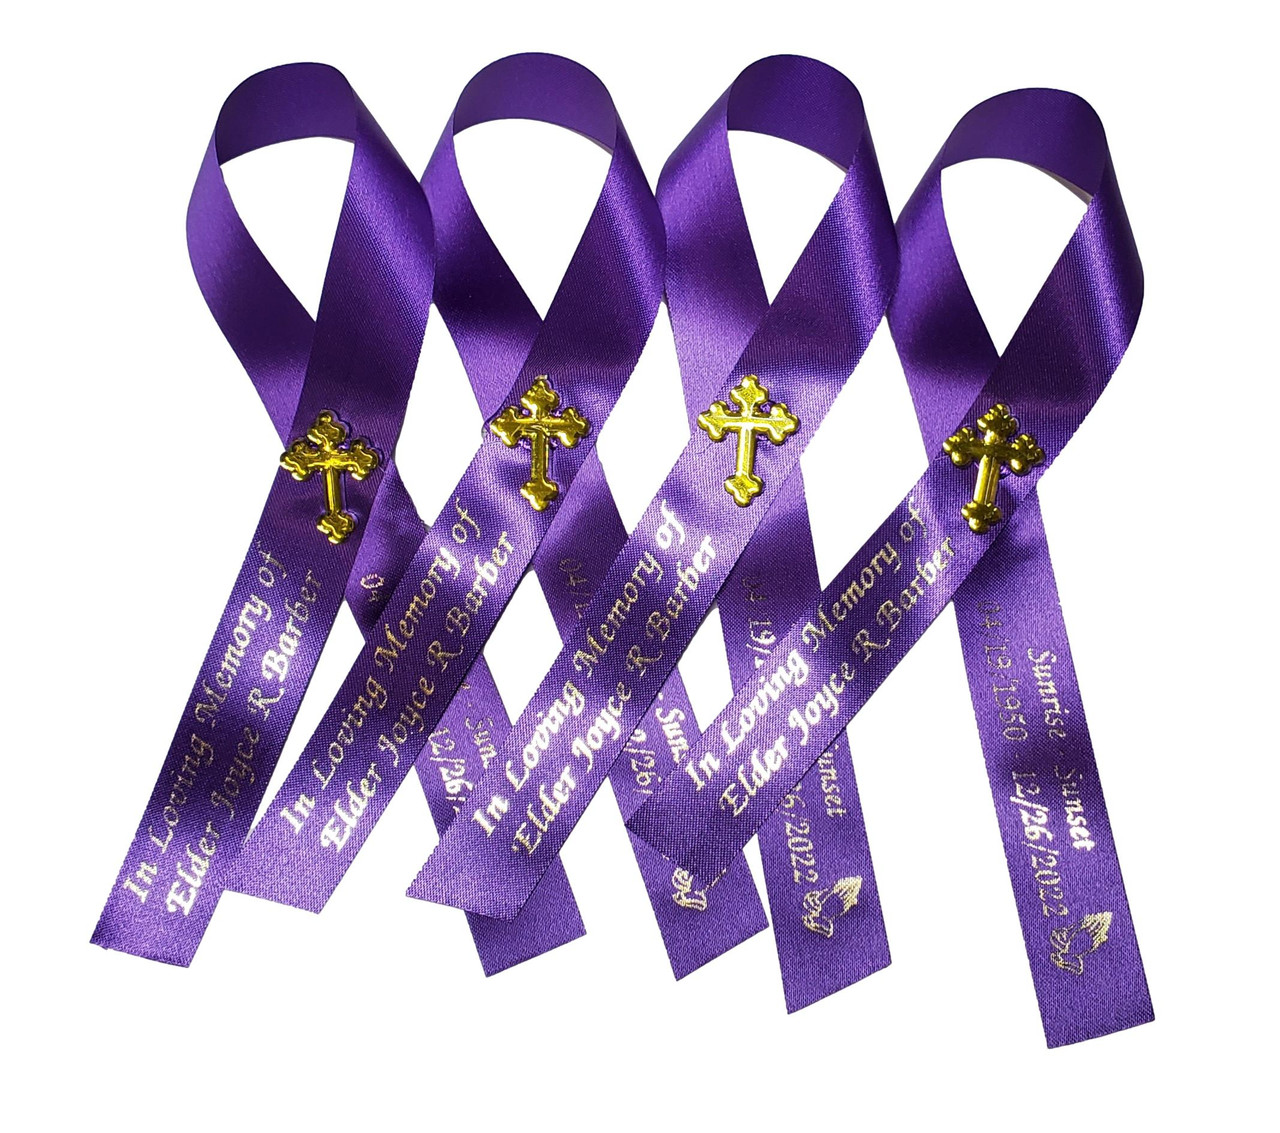 Violet Cancer Ribbon, Awareness Ribbons (No Personalization) - 10 Pack